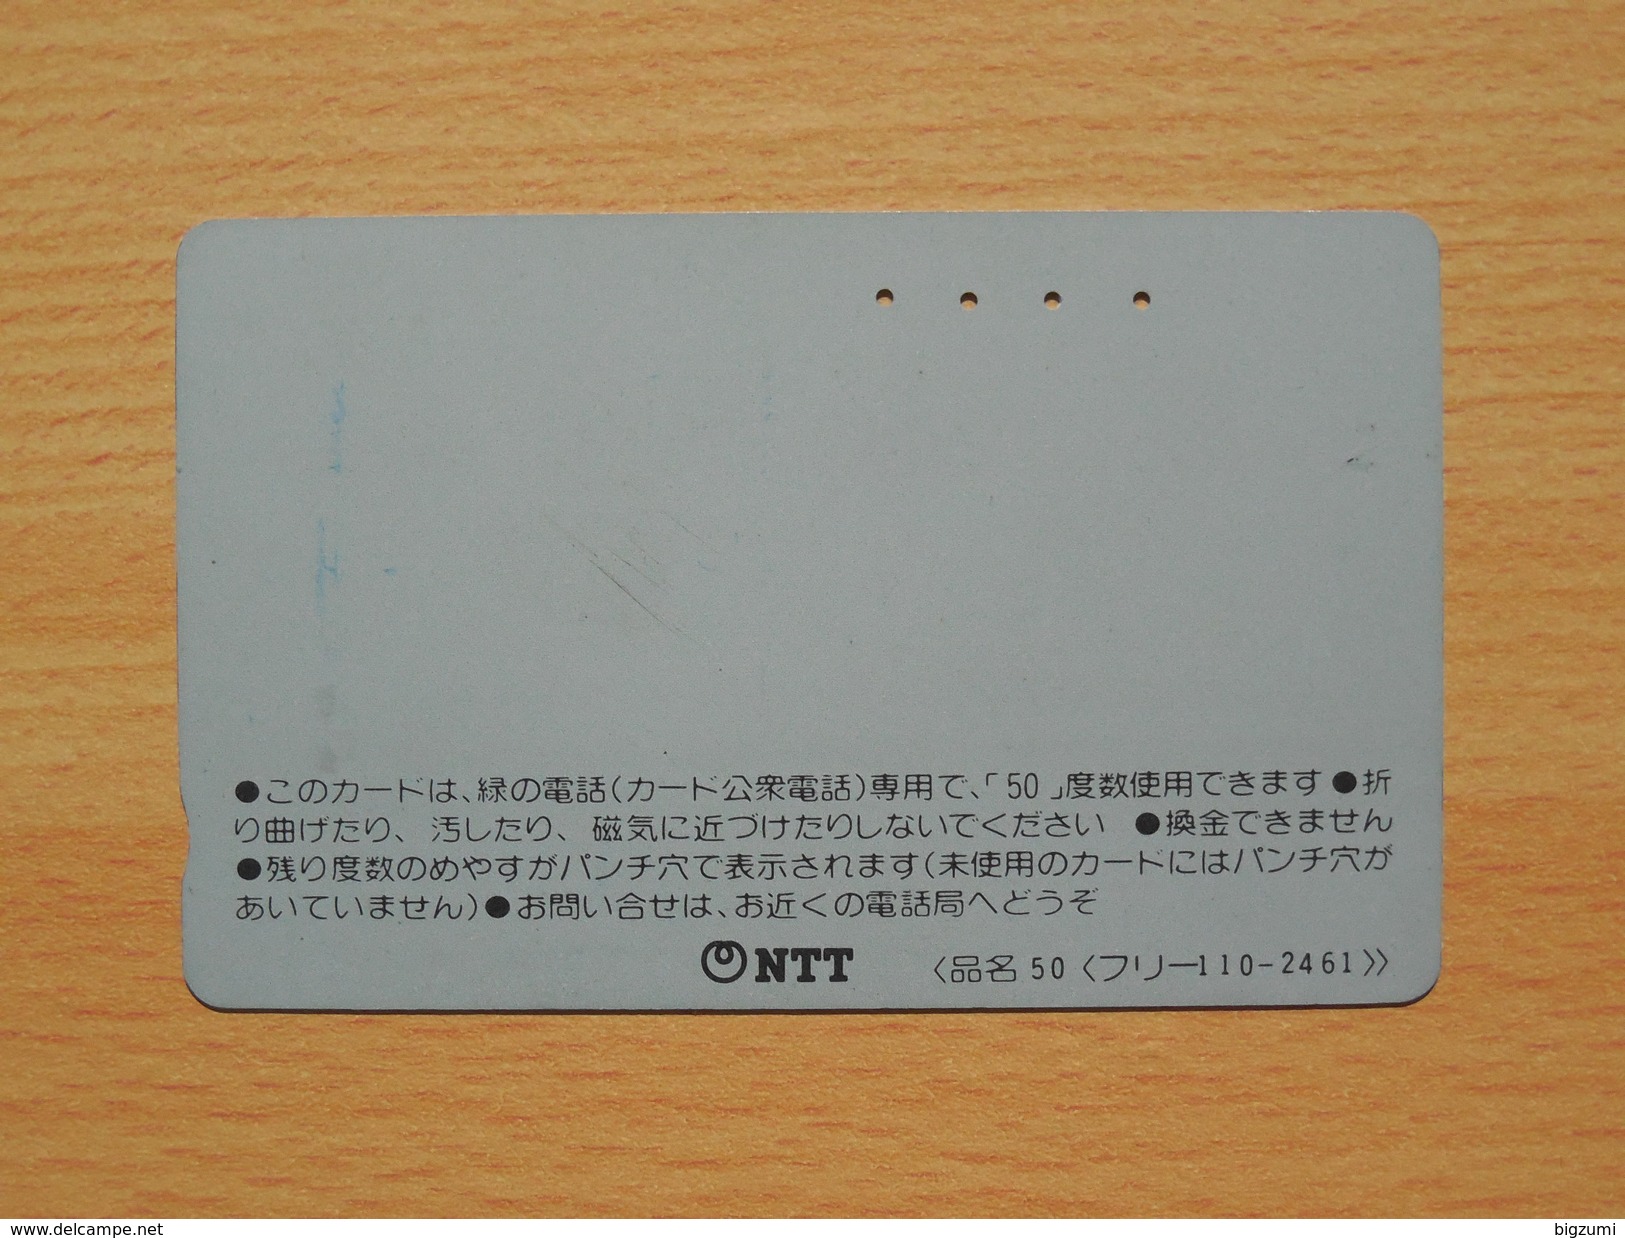 Japon Japan Free Front Bar, Balken Phonecard - 110-2461 / NEC - Japan